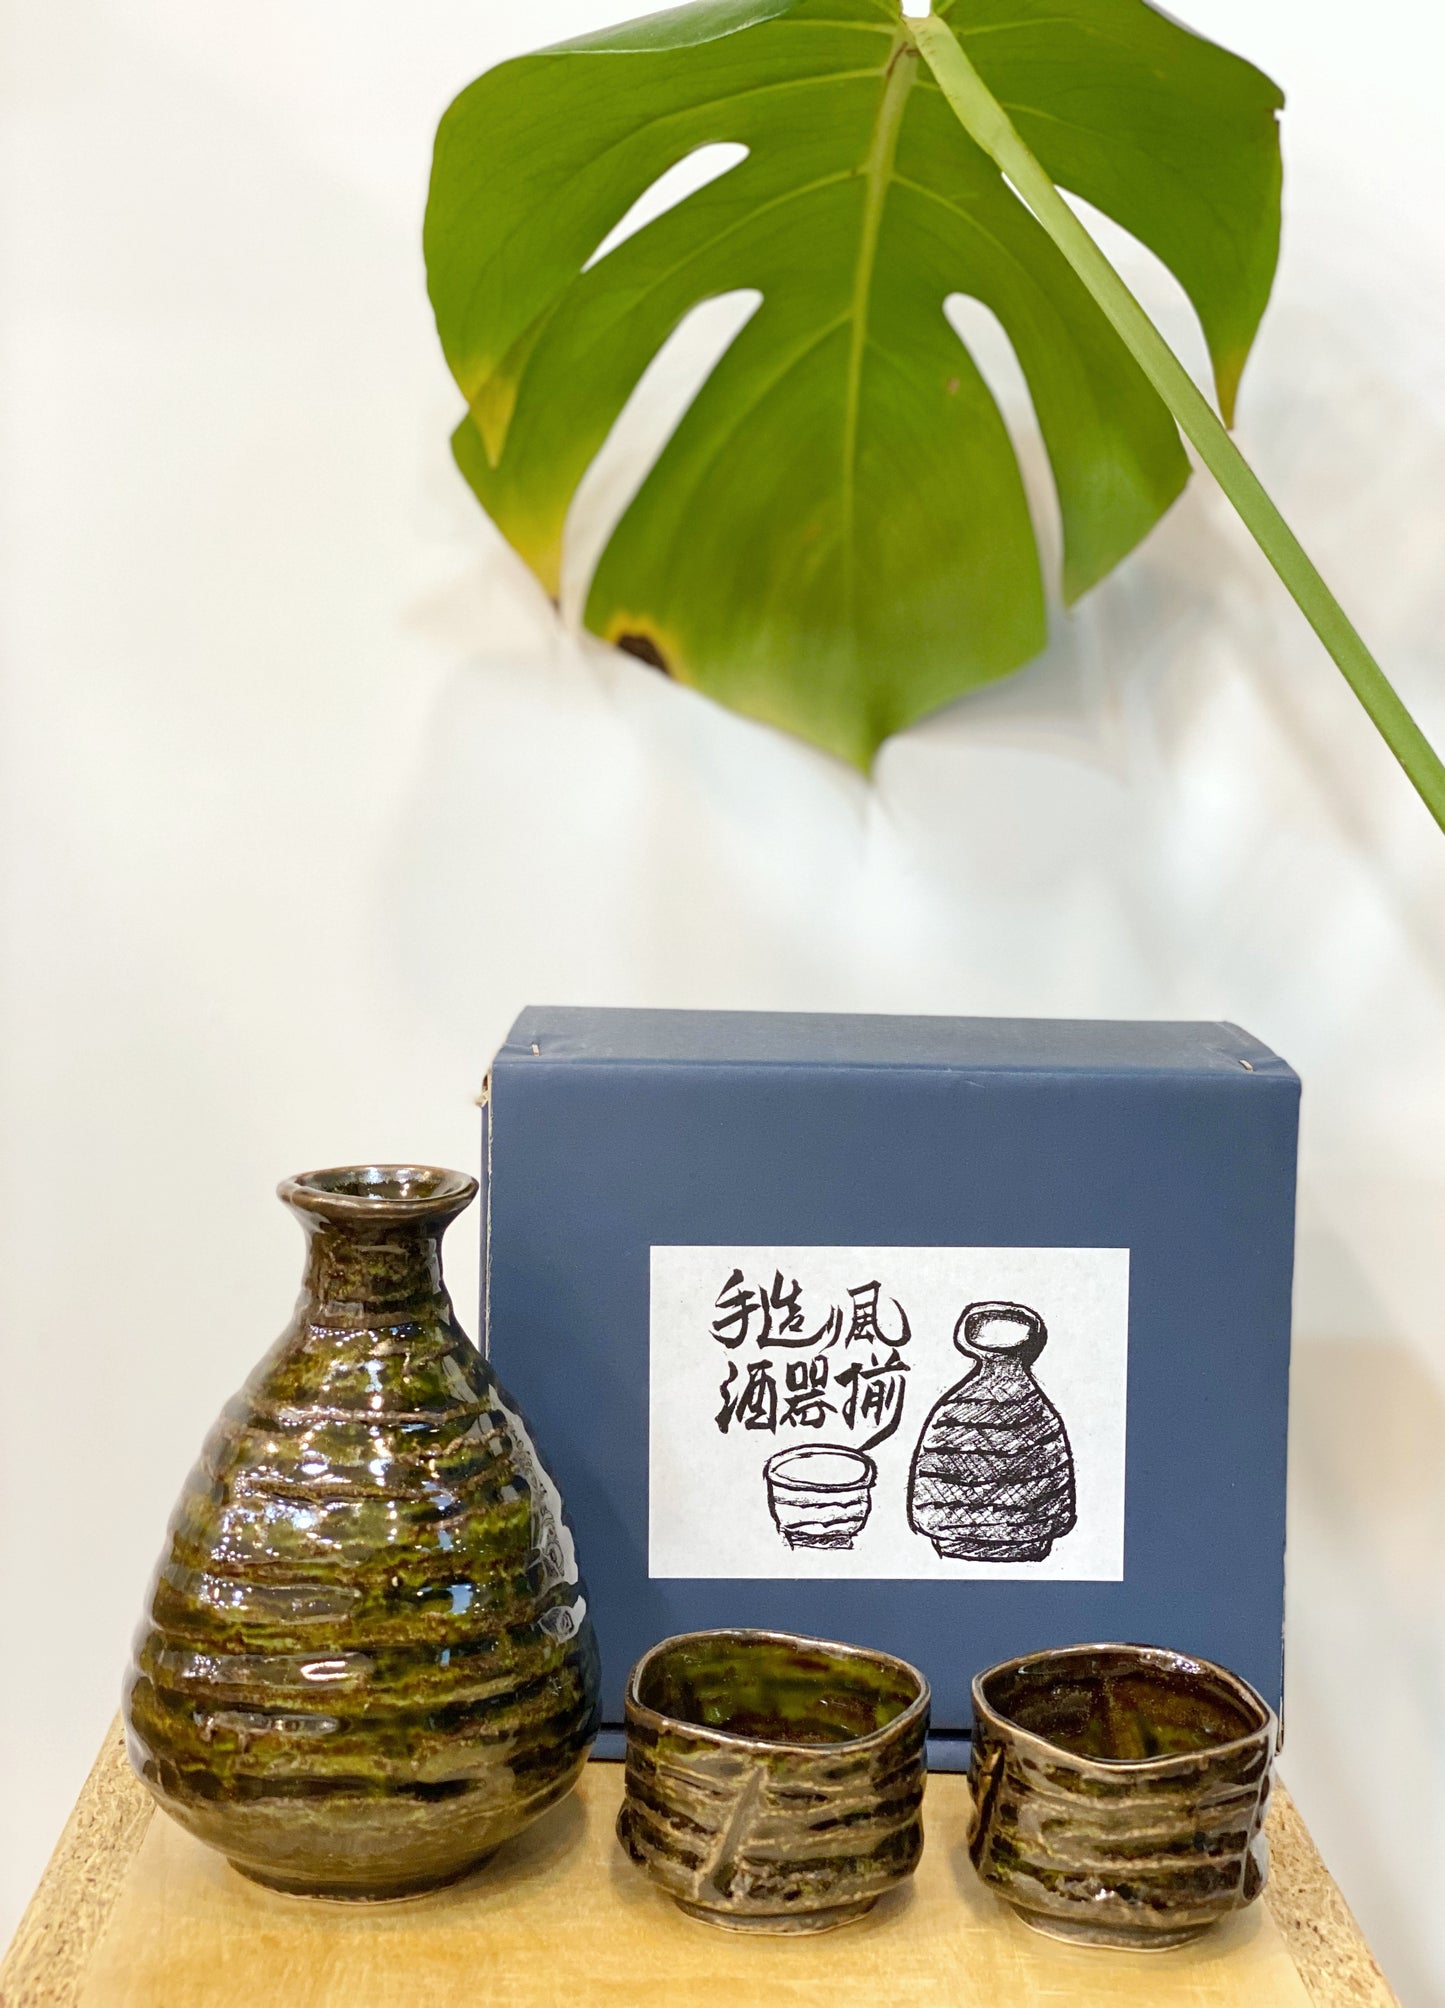 日本手工製 清酒杯套裝 (綠色) |  Handmade in Japan Sake Cup Set (Green)